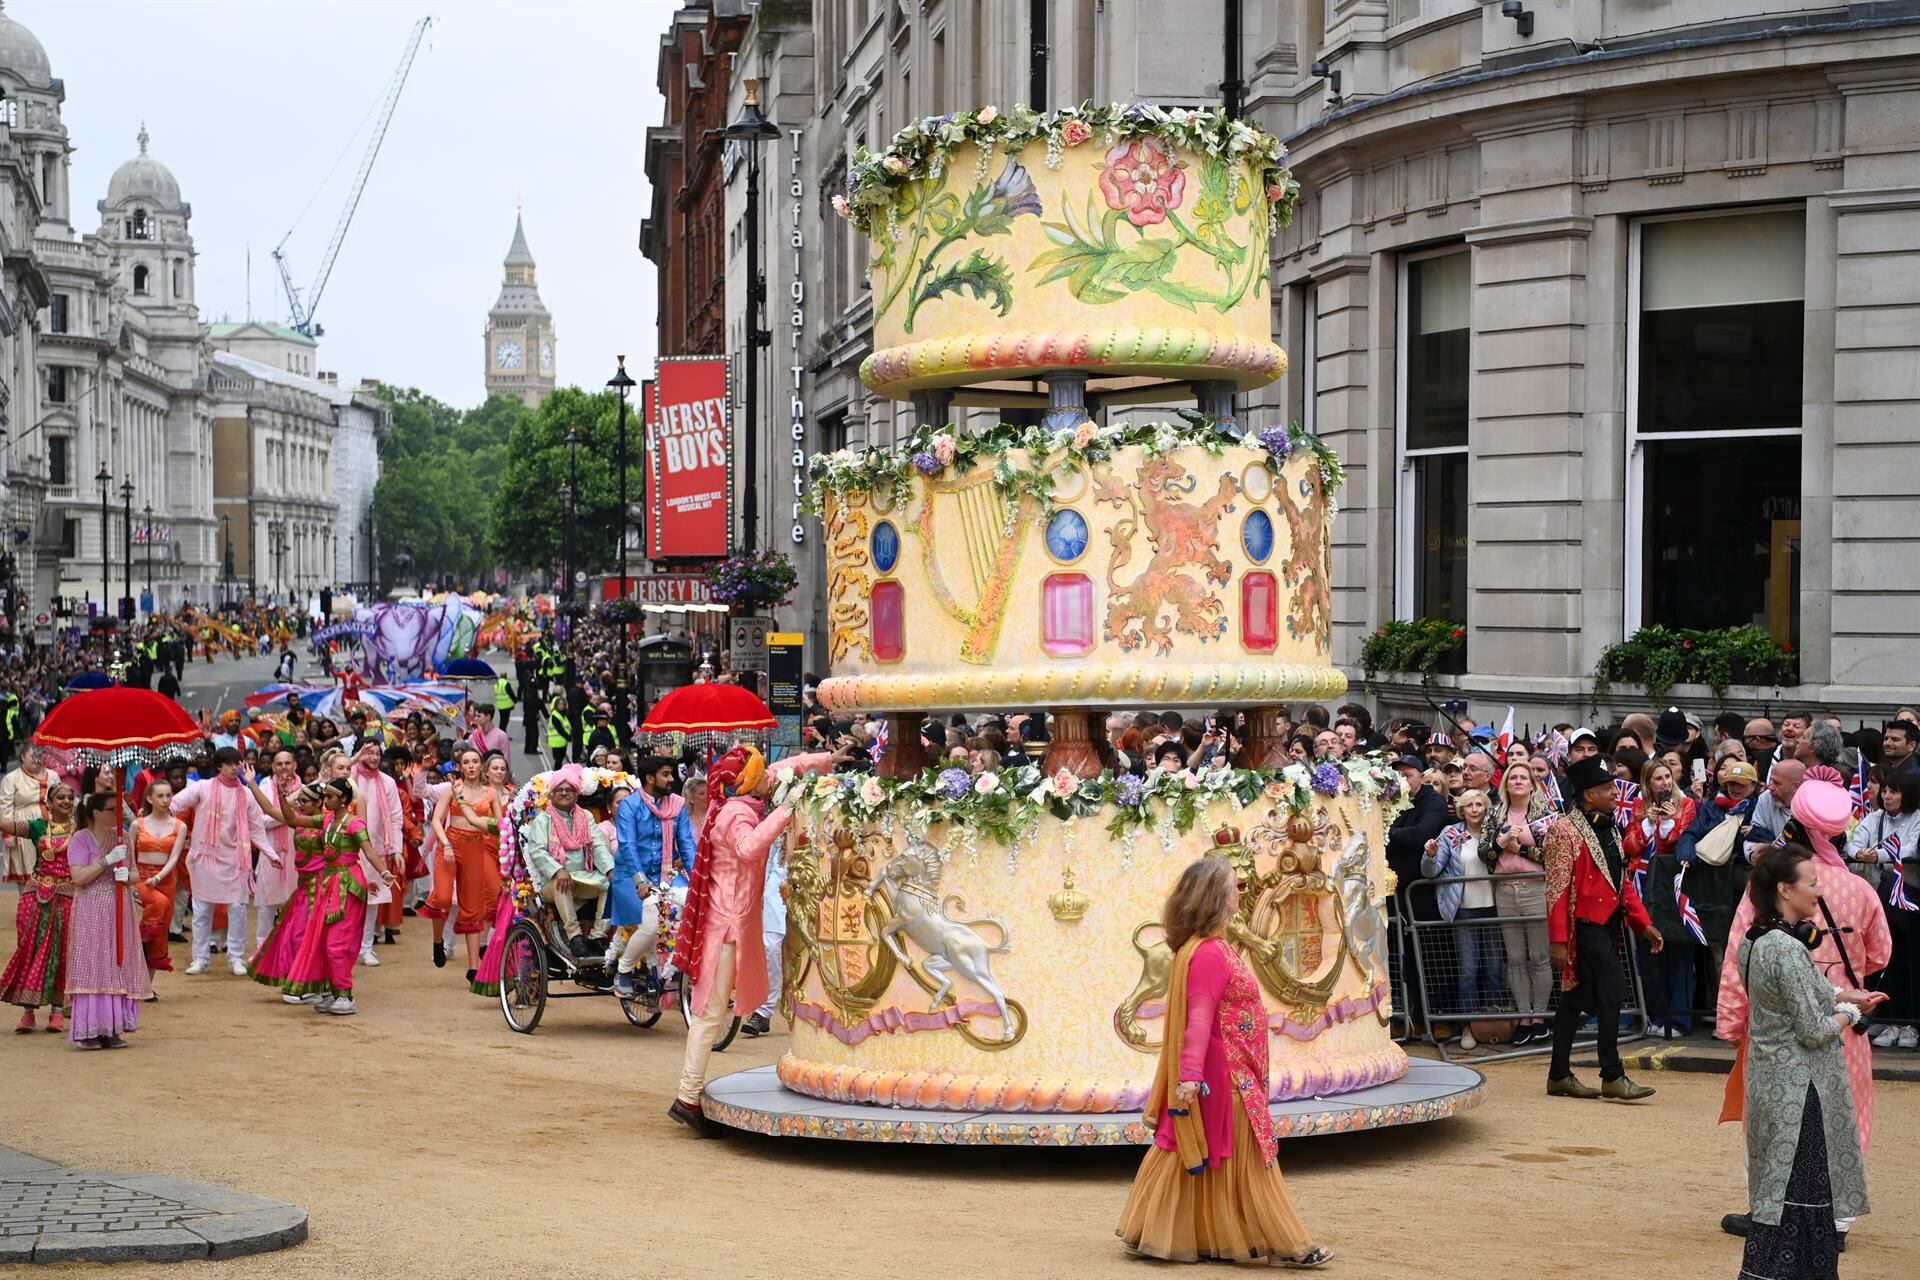 Los participantes representan una escena de boda de Bollywood mientras desfilan durante el Desfile de Platino que celebra el Jubileo de Platino de la Reina Isabel II. (Foto: EFE/EPA/ANDY RAIN)